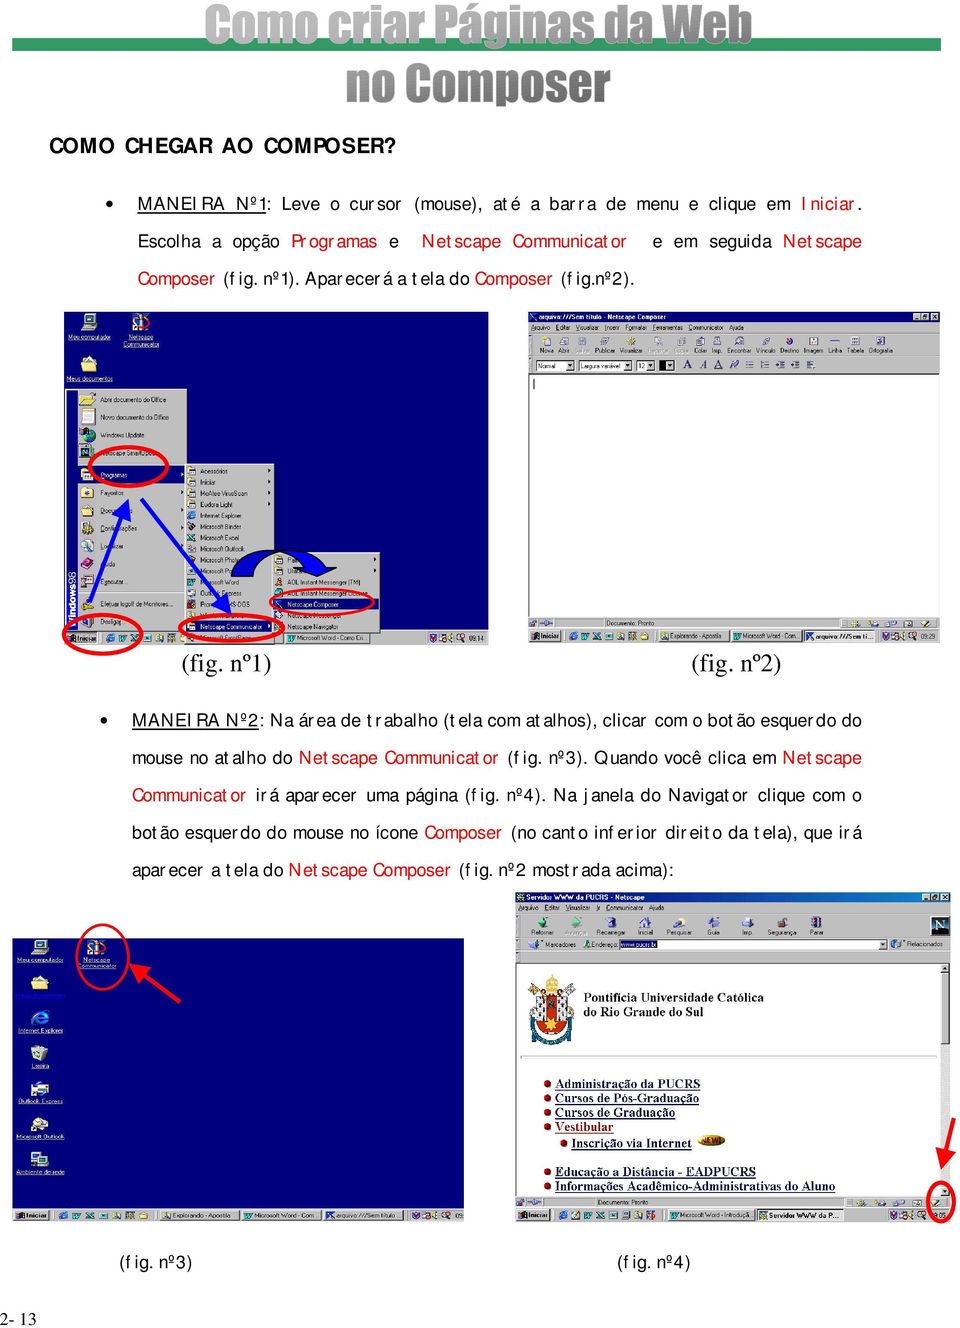 nº2) MANEIRA Nº2: Na área de trabalho (tela com atalhos), clicar com o botão esquerdo do mouse no atalho do Netscape Communicator (fig. nº3).